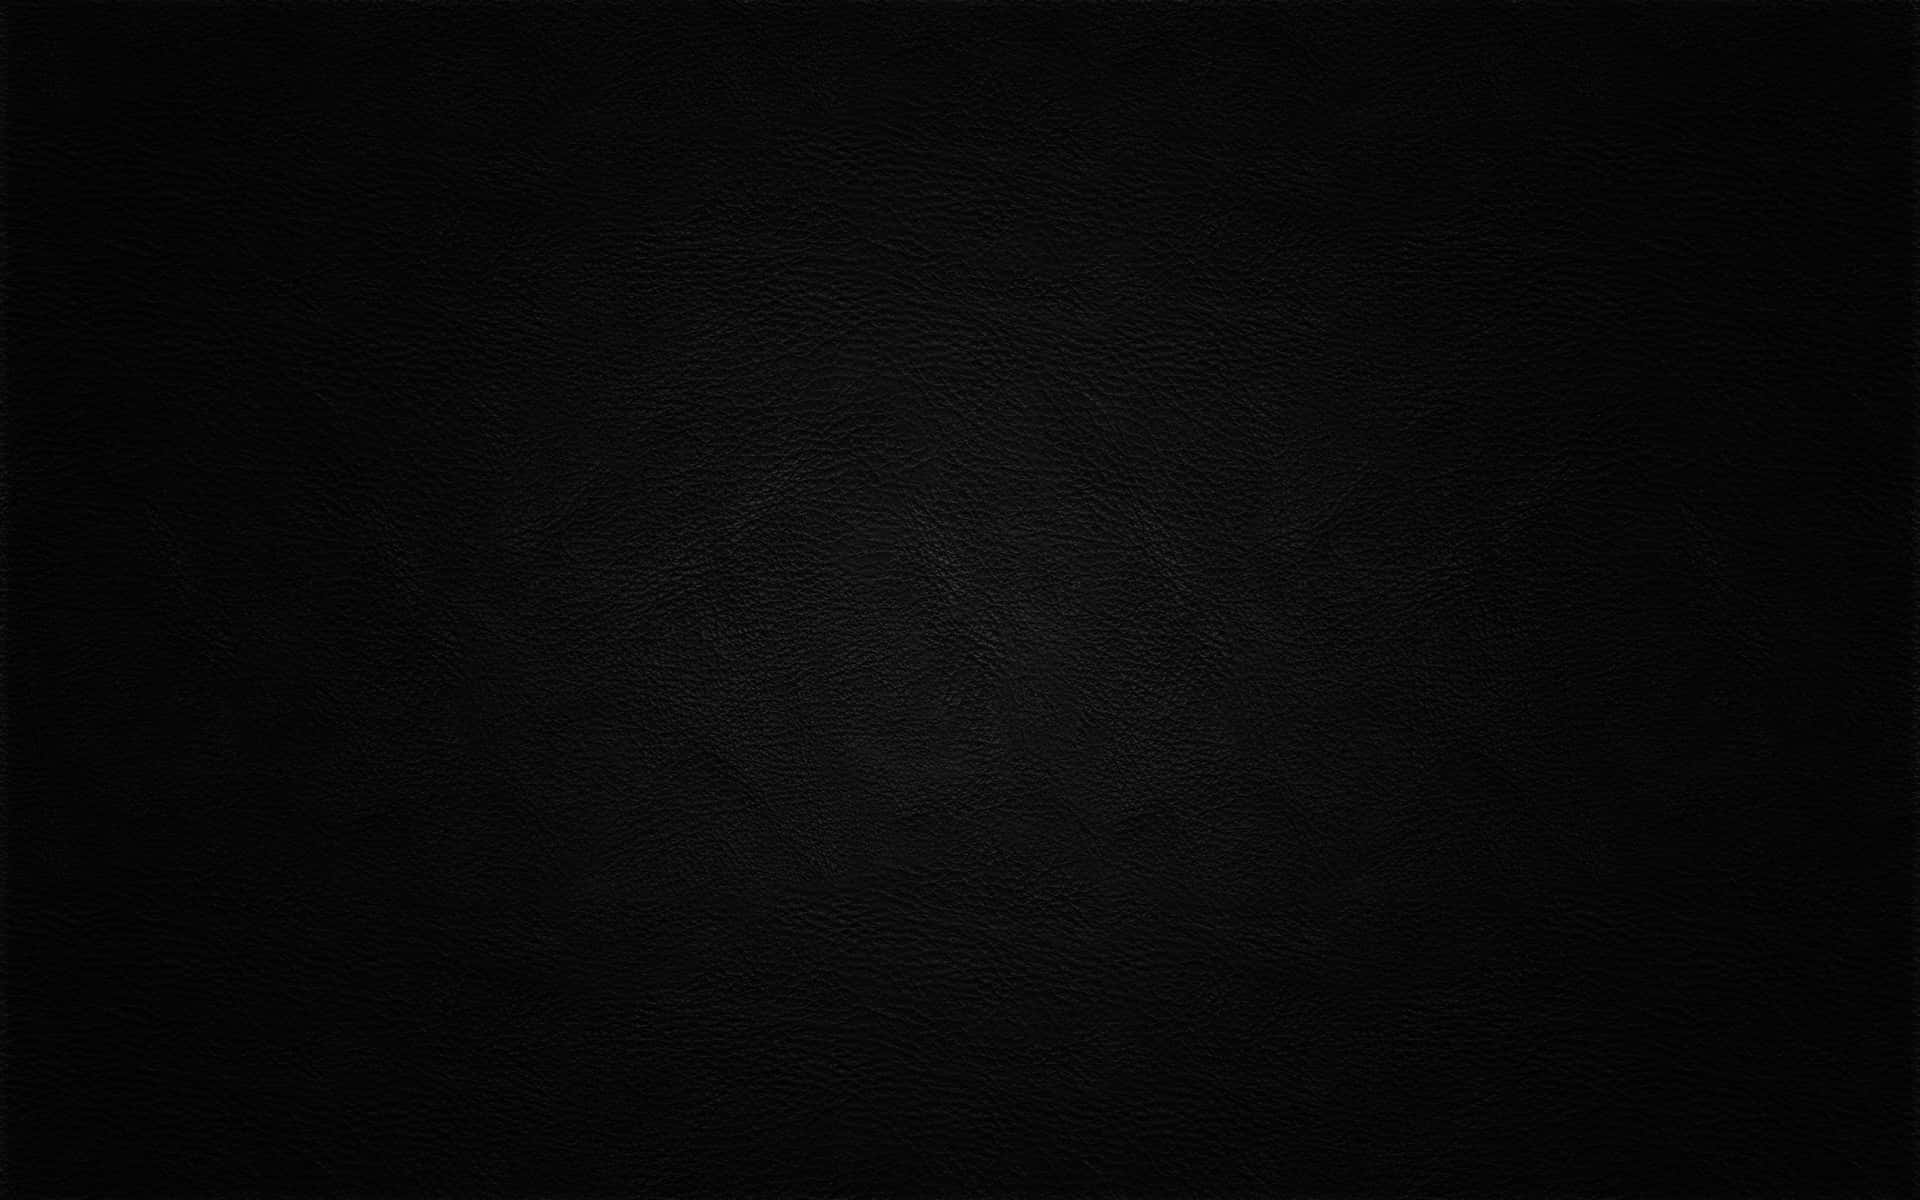 Plain Black Desktop With A Rough Texture Wallpaper